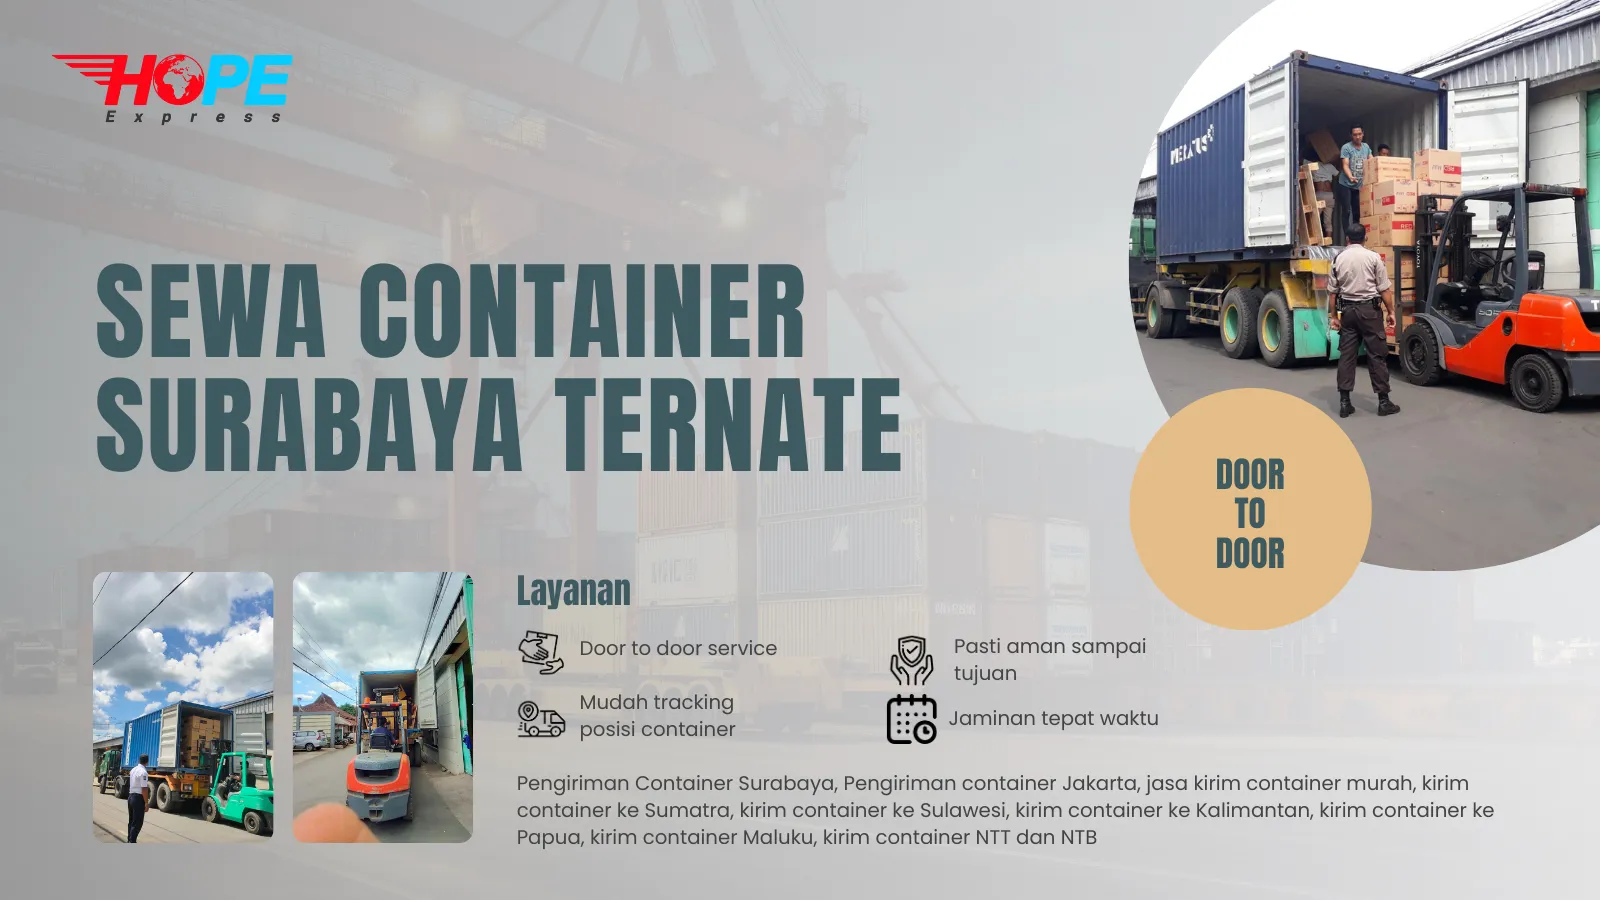 Sewa Container Surabaya Ternate